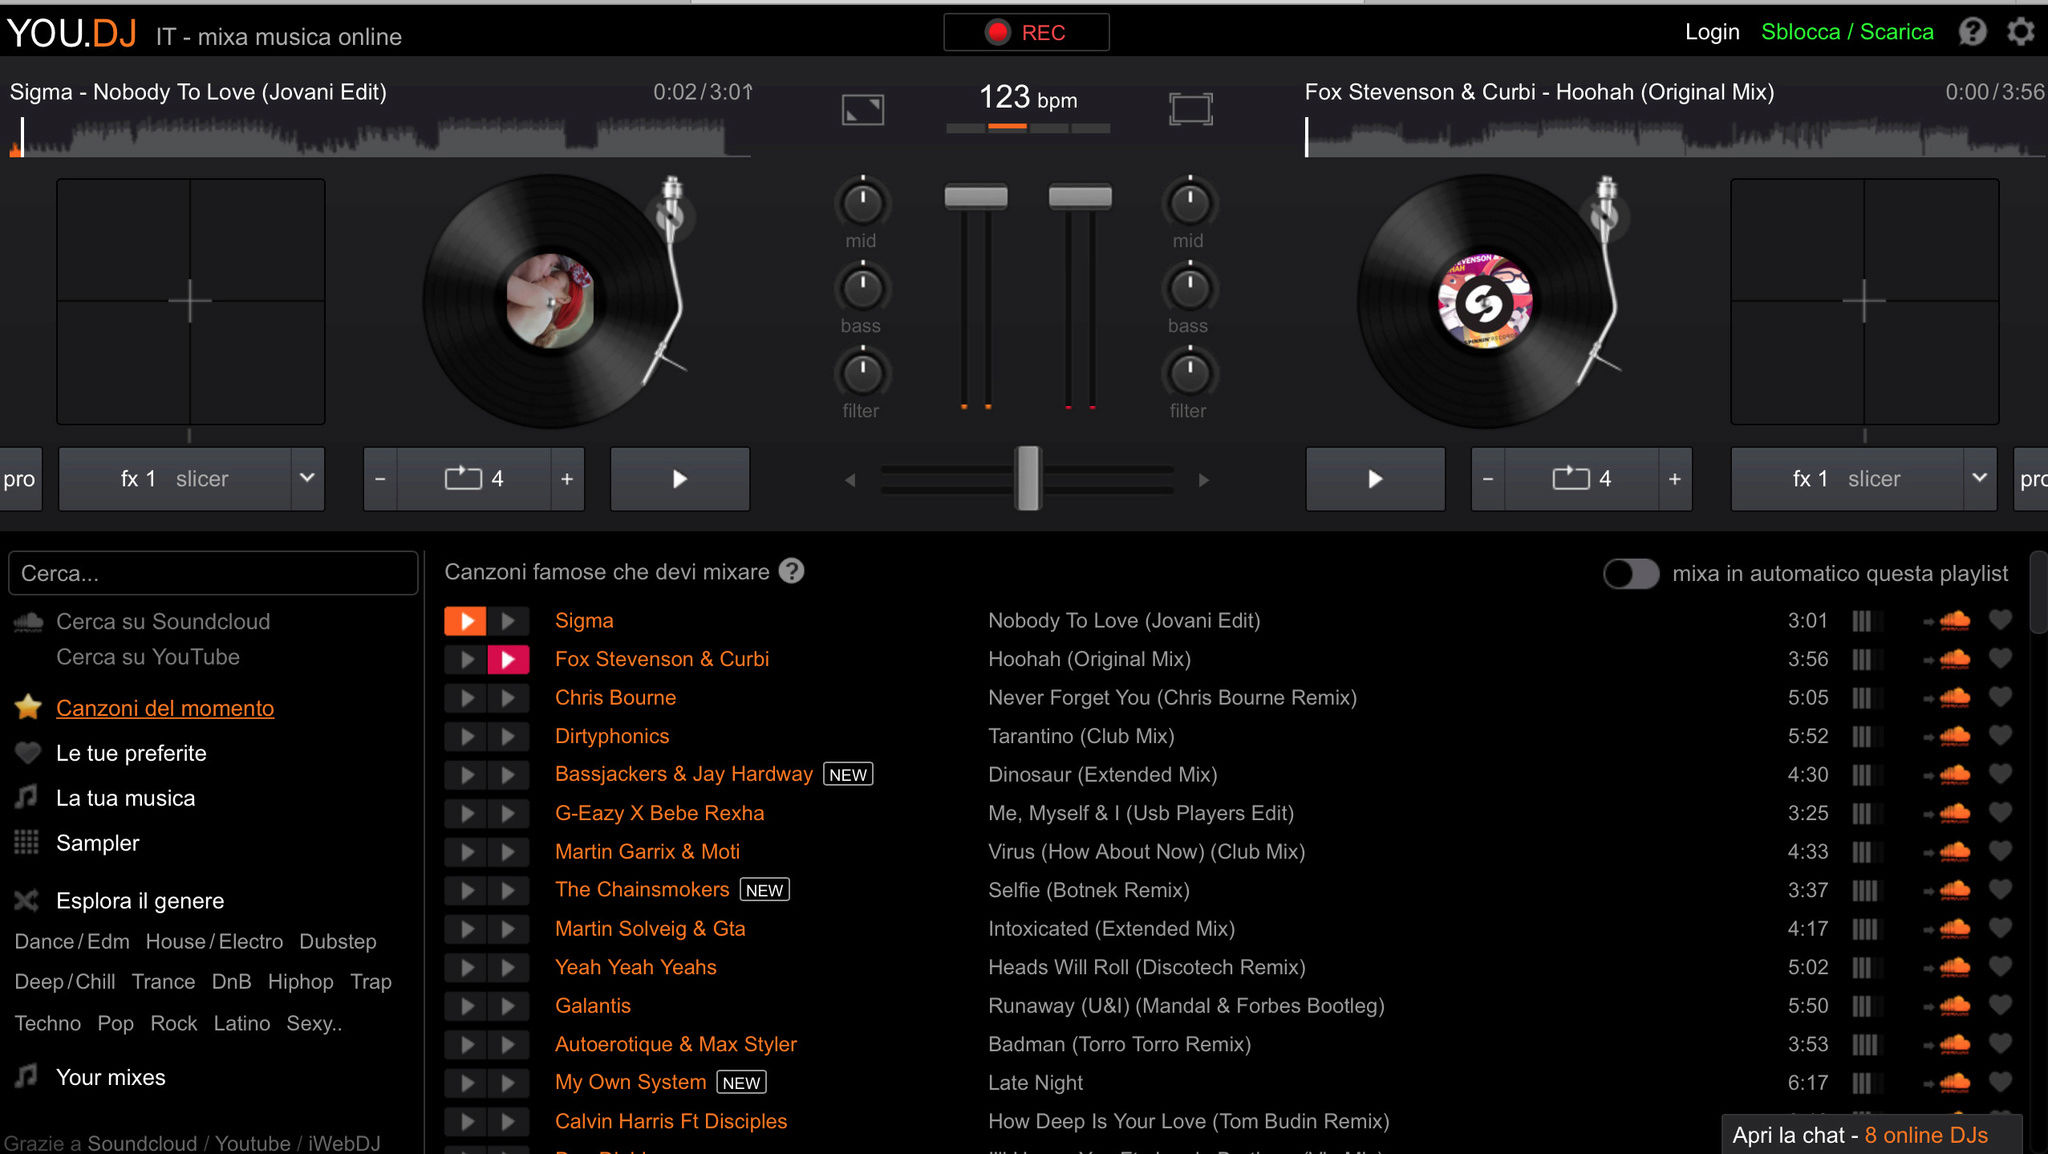 YOU.DJ – Mixare musica da SoundCloud direttamente online e gratis Youdj10